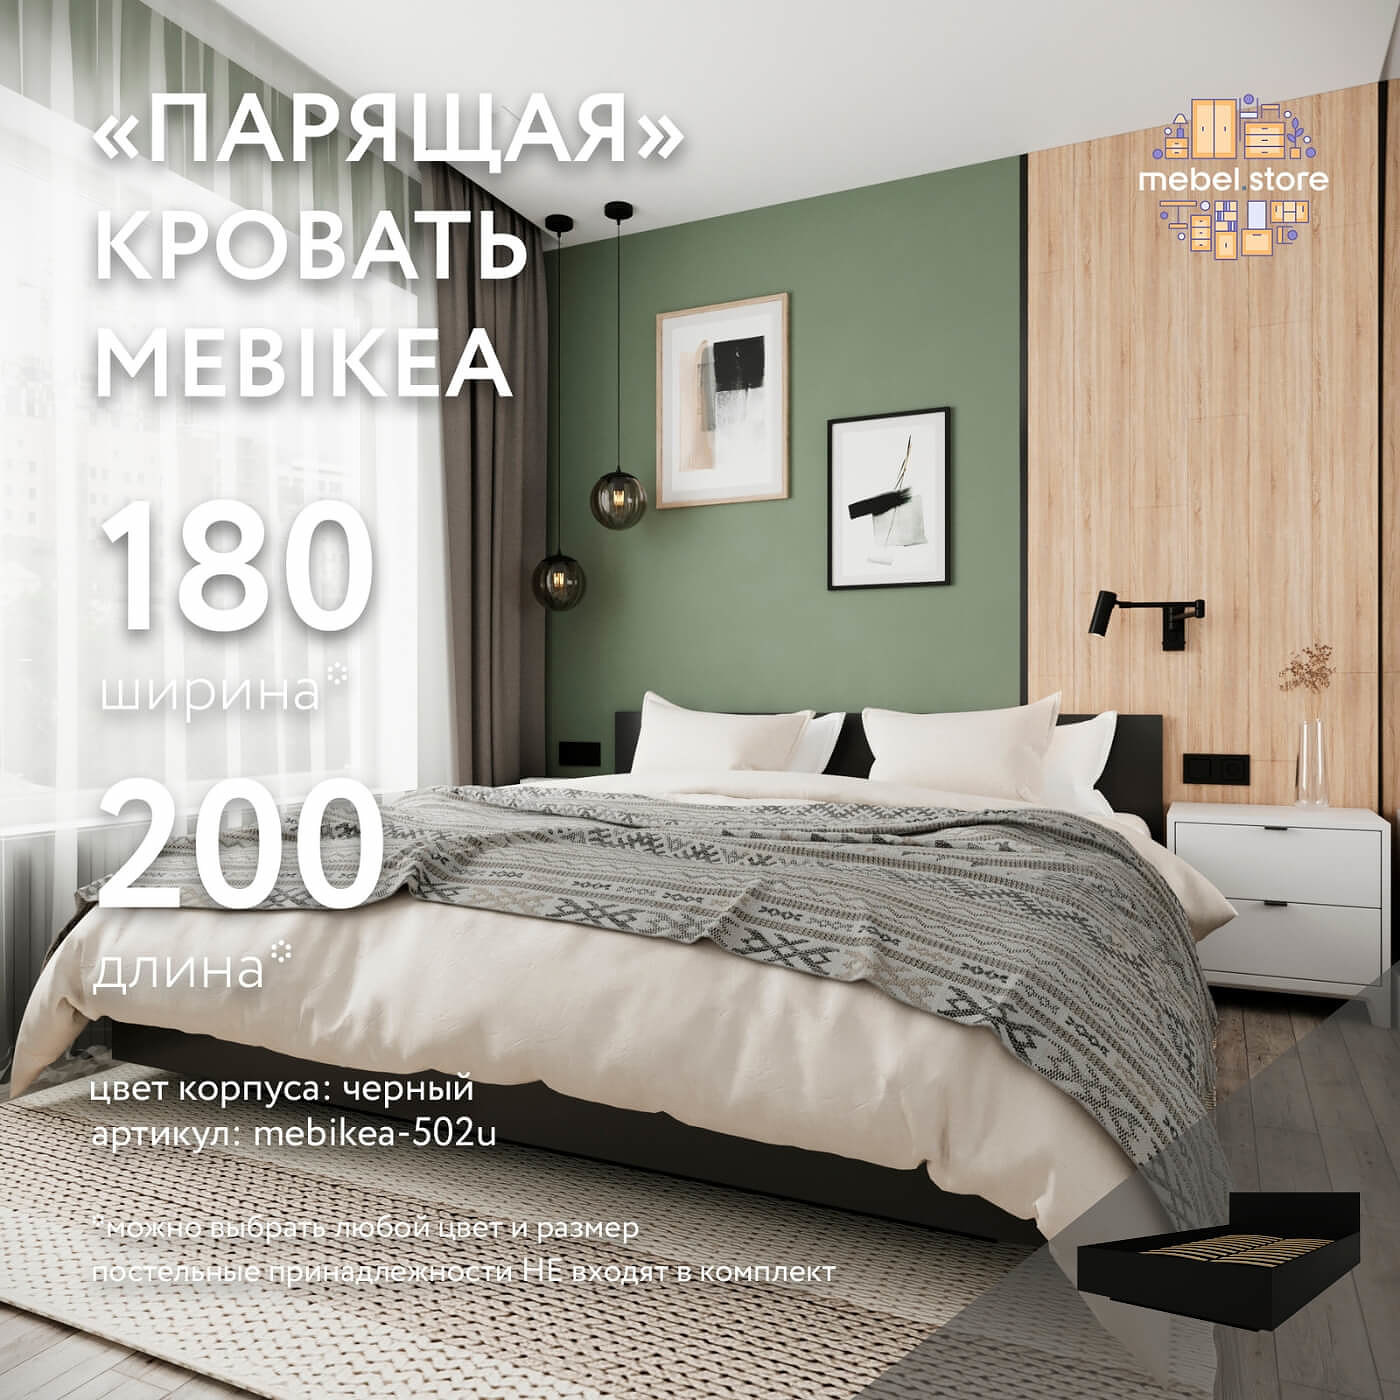 Кровать Mebikea-502u двуспальная минимализм - фото 1 large